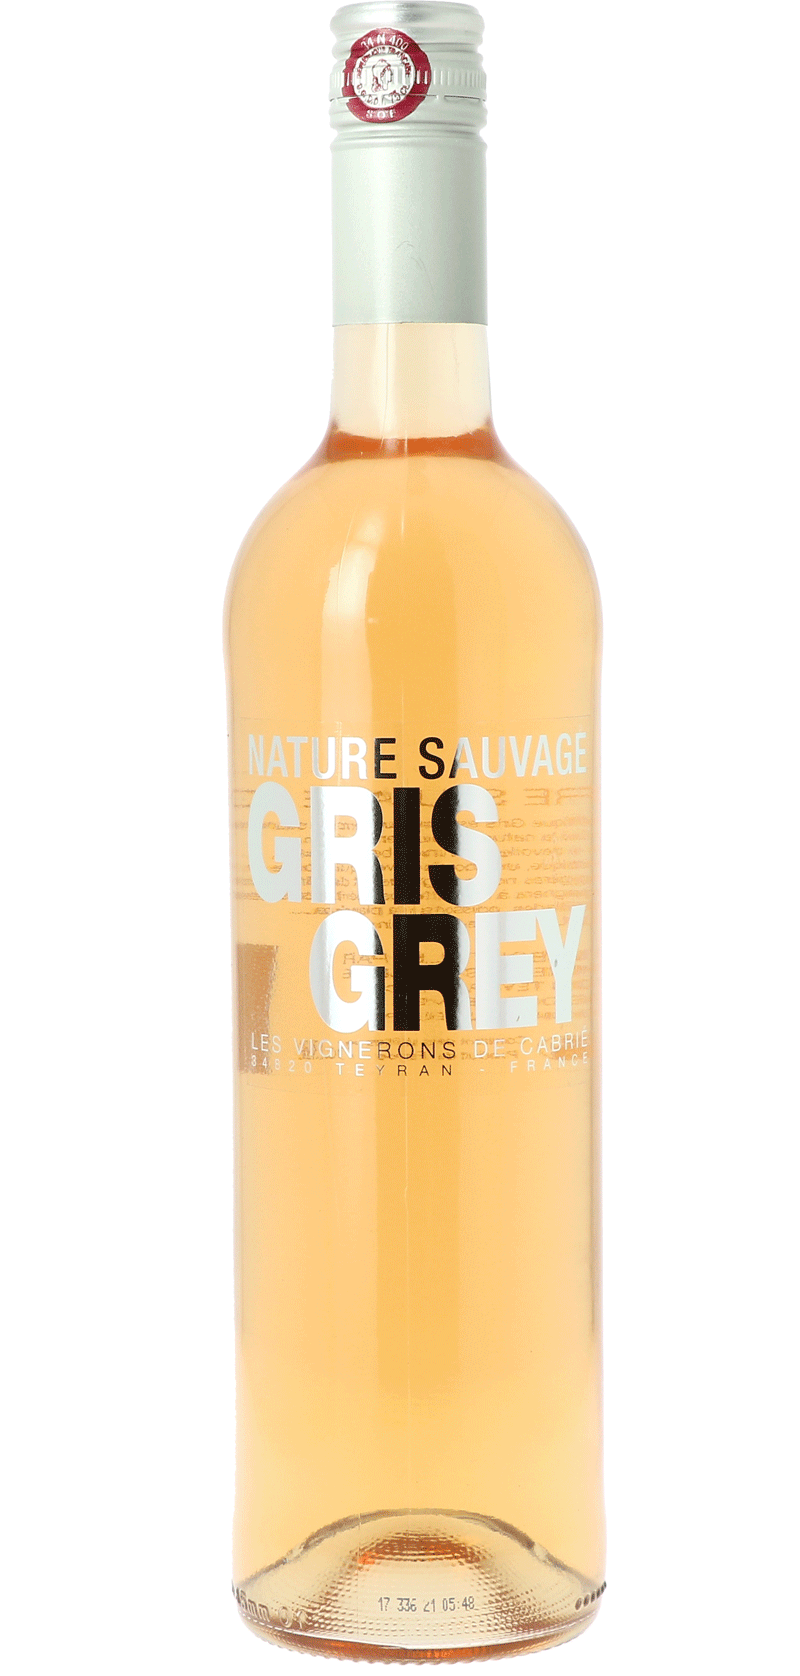 Nature Sauvage Gris Grey Les Vignerons de Cabrié - Rosé Wine